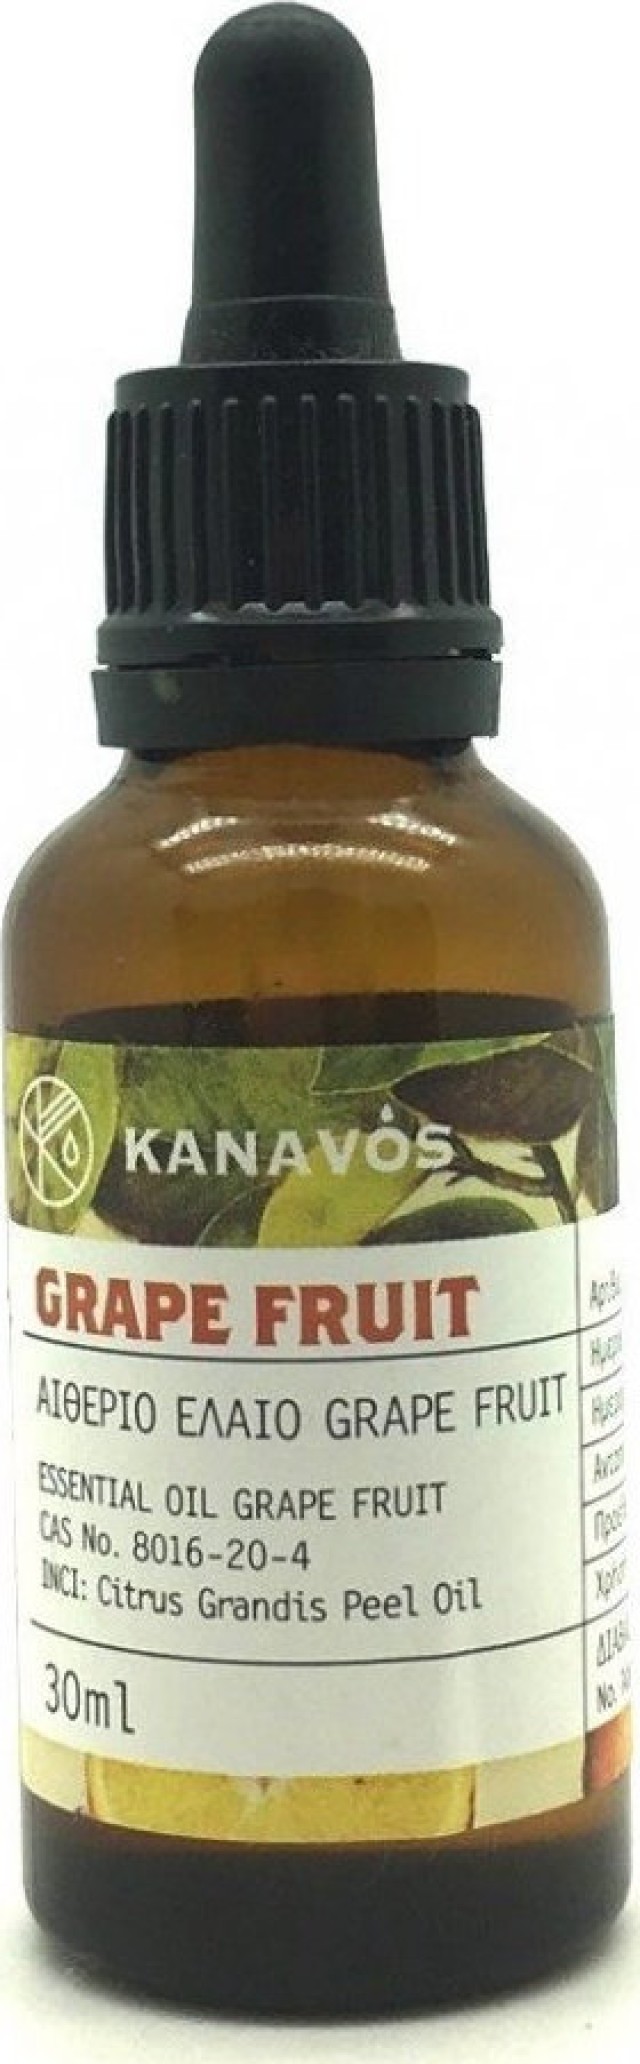 Kanavos Essential Oil Grapefruit 30ml